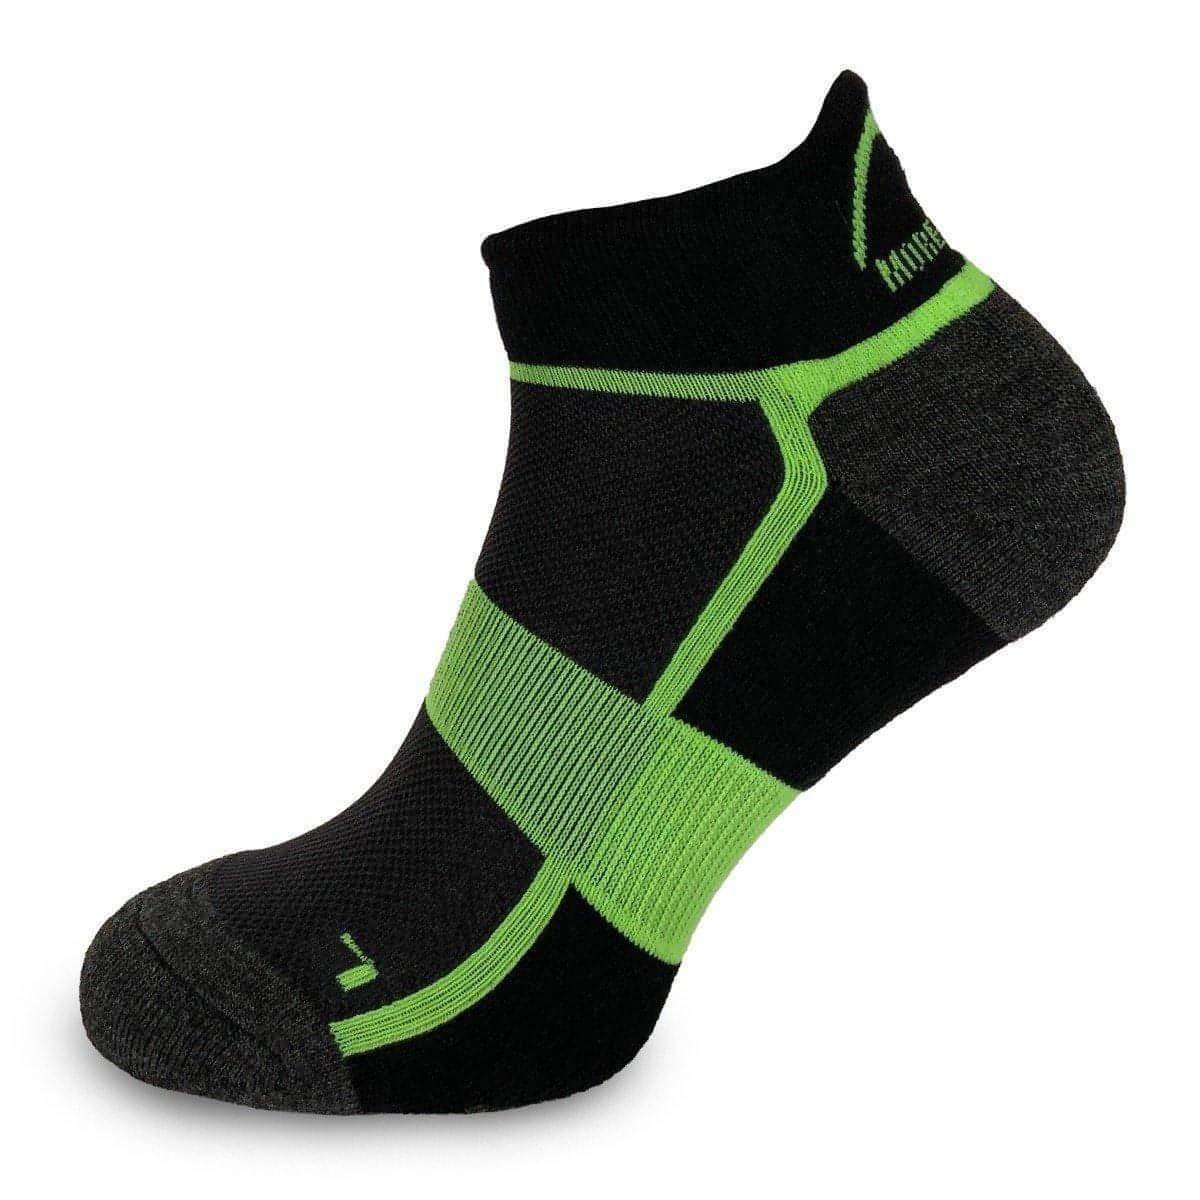 More Mile Bamboo Comfort Running Socks - Black - Start Fitness